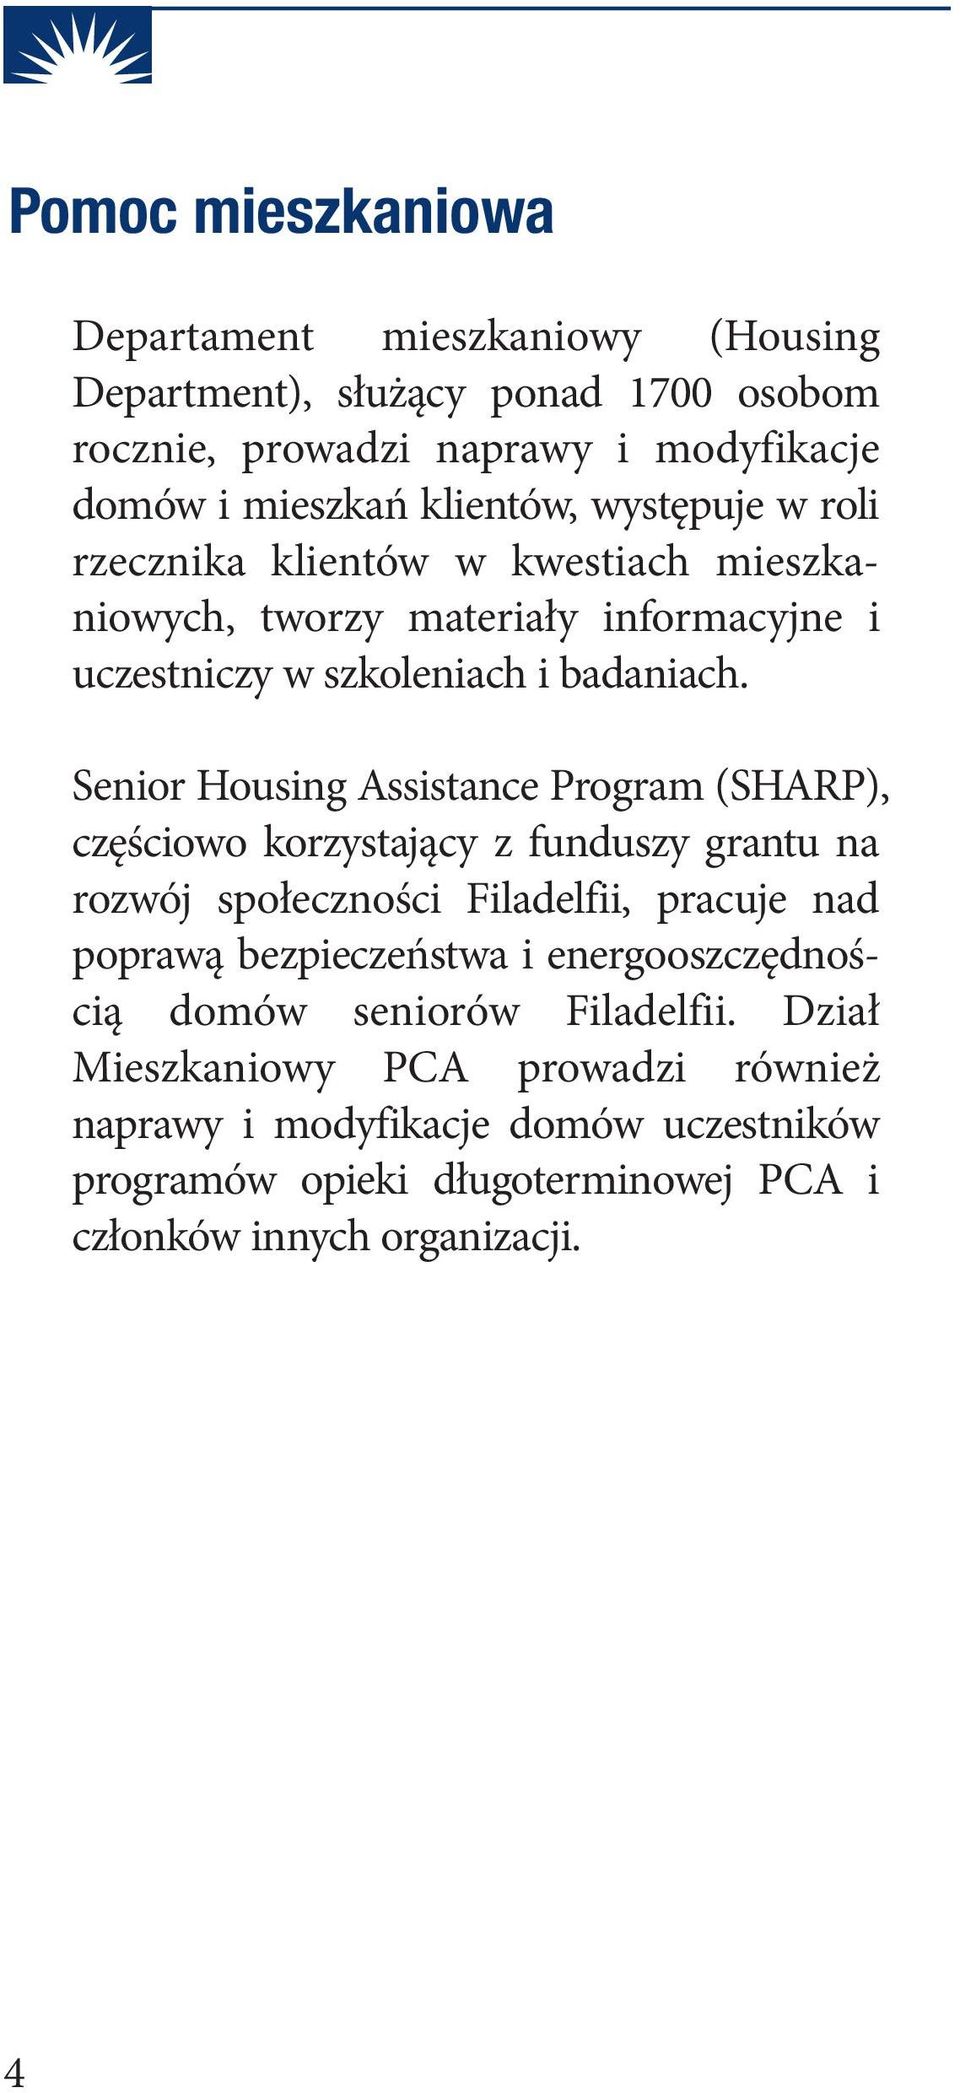 Senior Housing Assistance Program (SHARP), częściowo korzystający z funduszy grantu na rozwój społeczności Filadelfii, pracuje nad poprawą bezpieczeństwa i